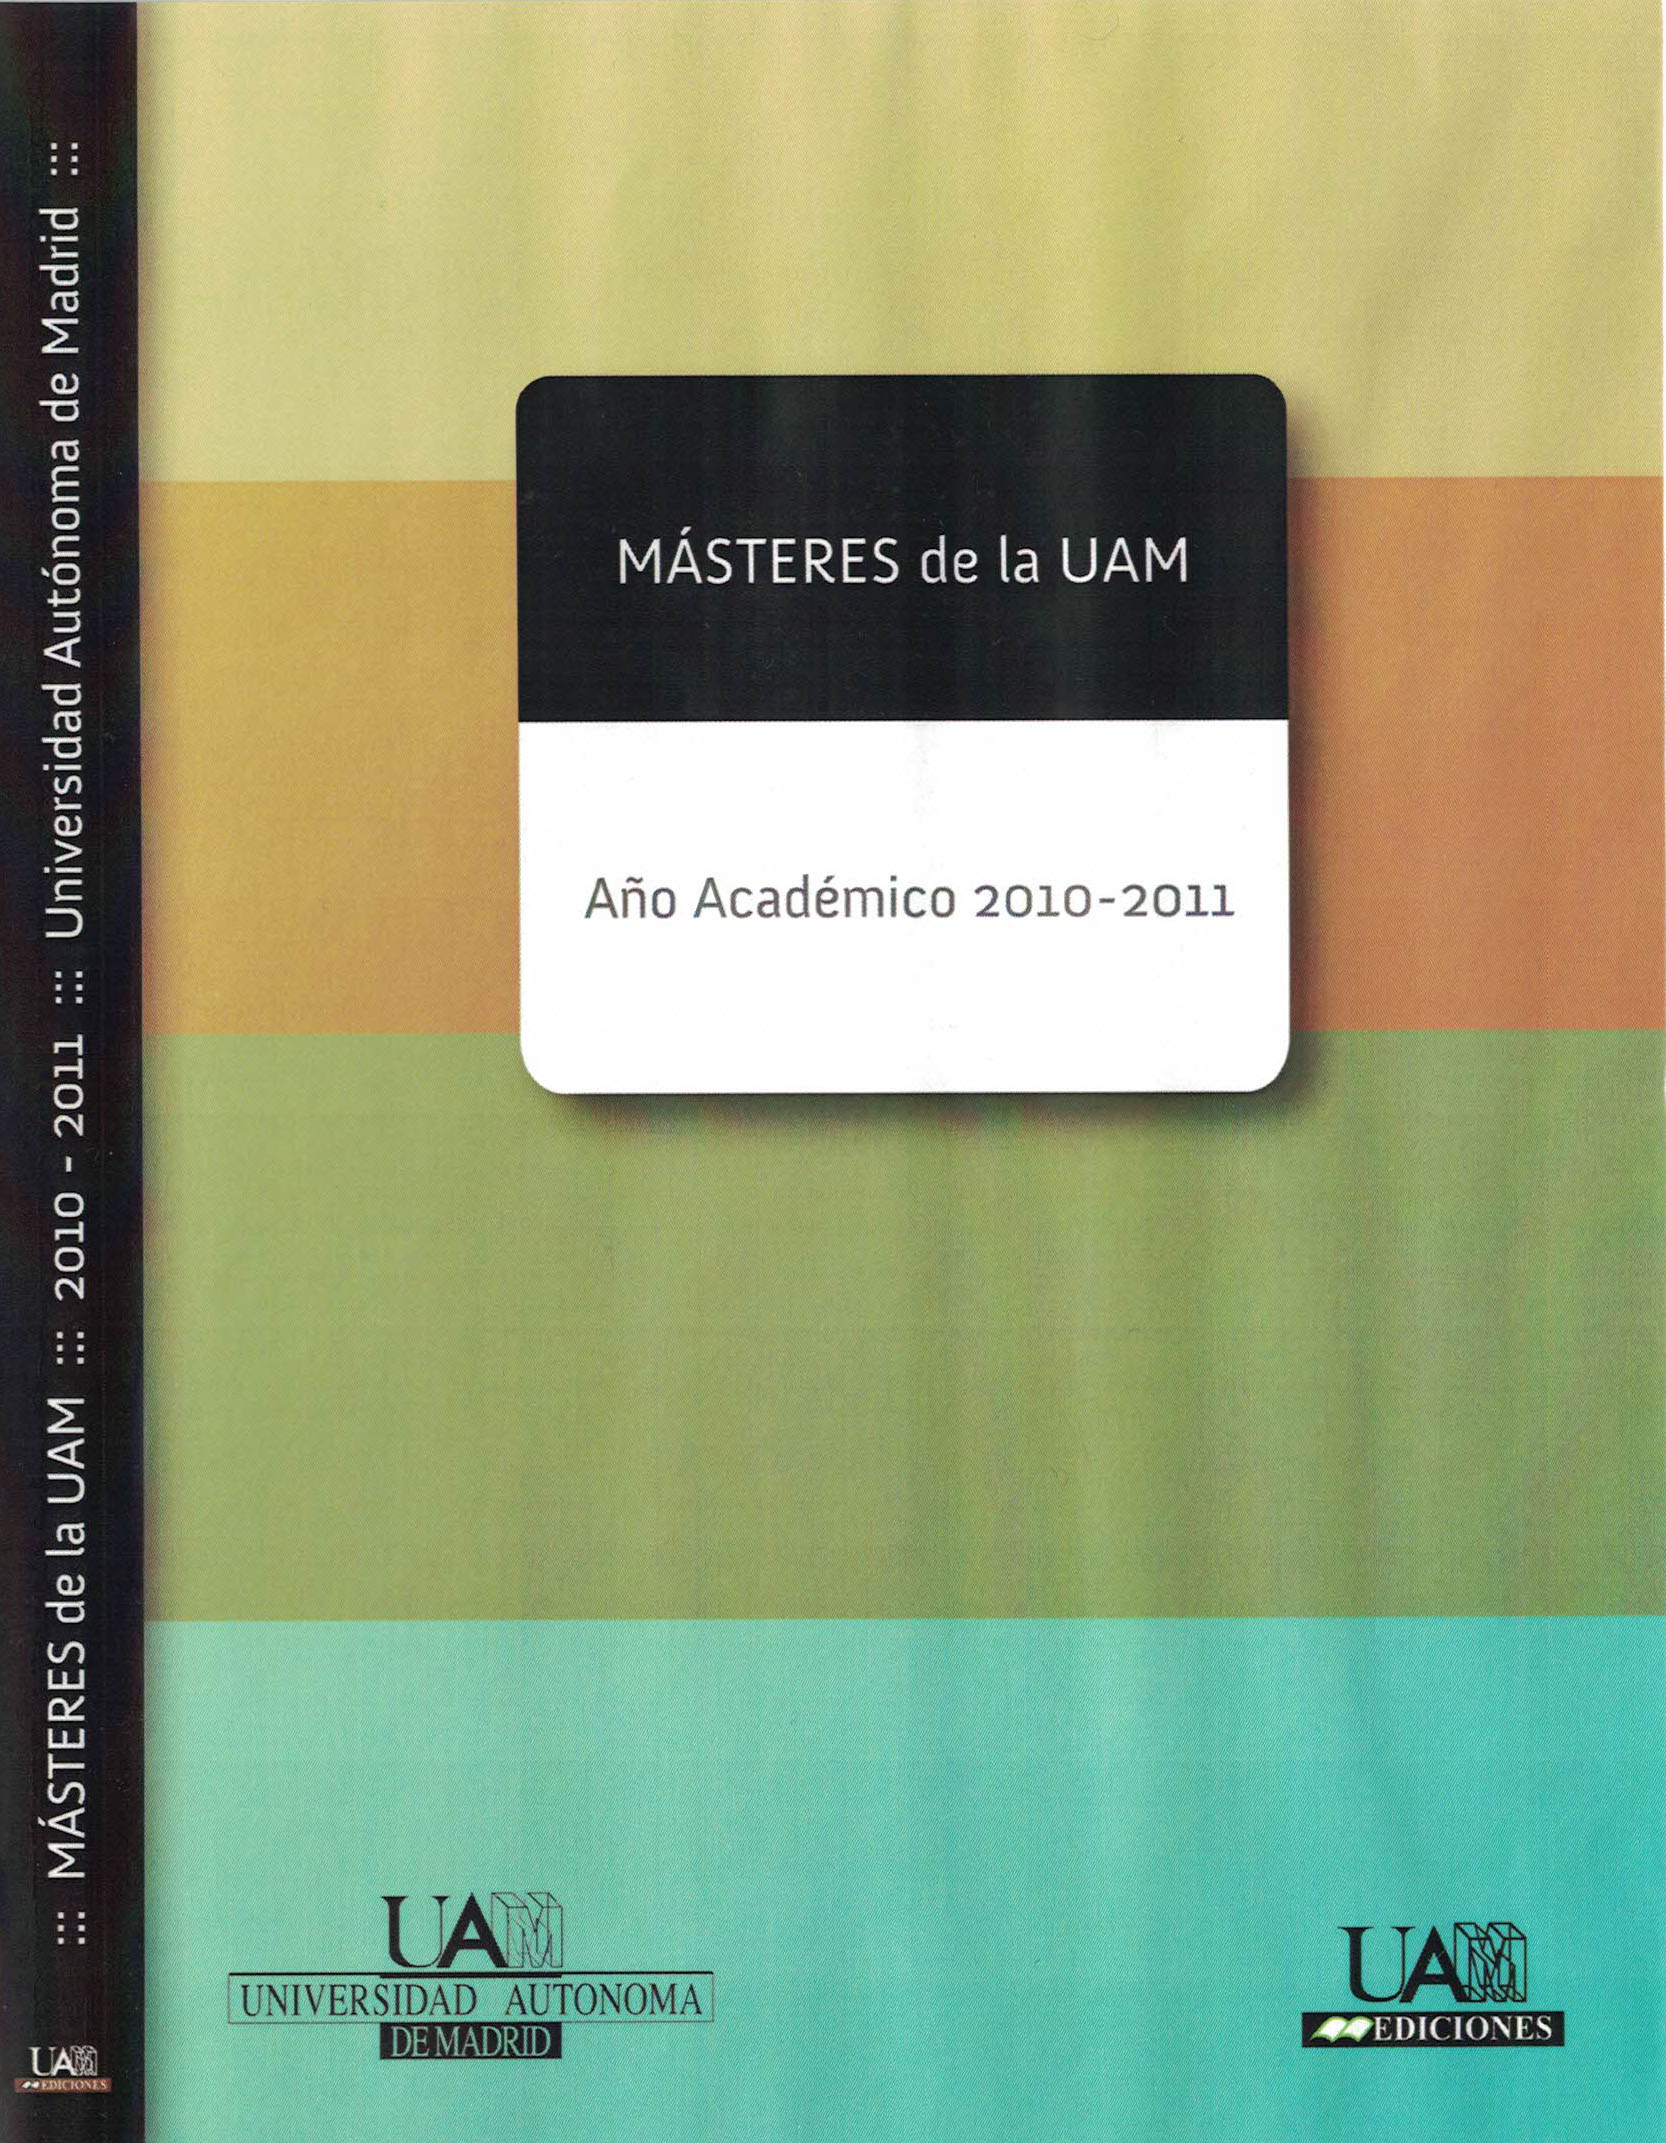 Imagen de portada del libro Másteres de la UAM [CD-ROM]